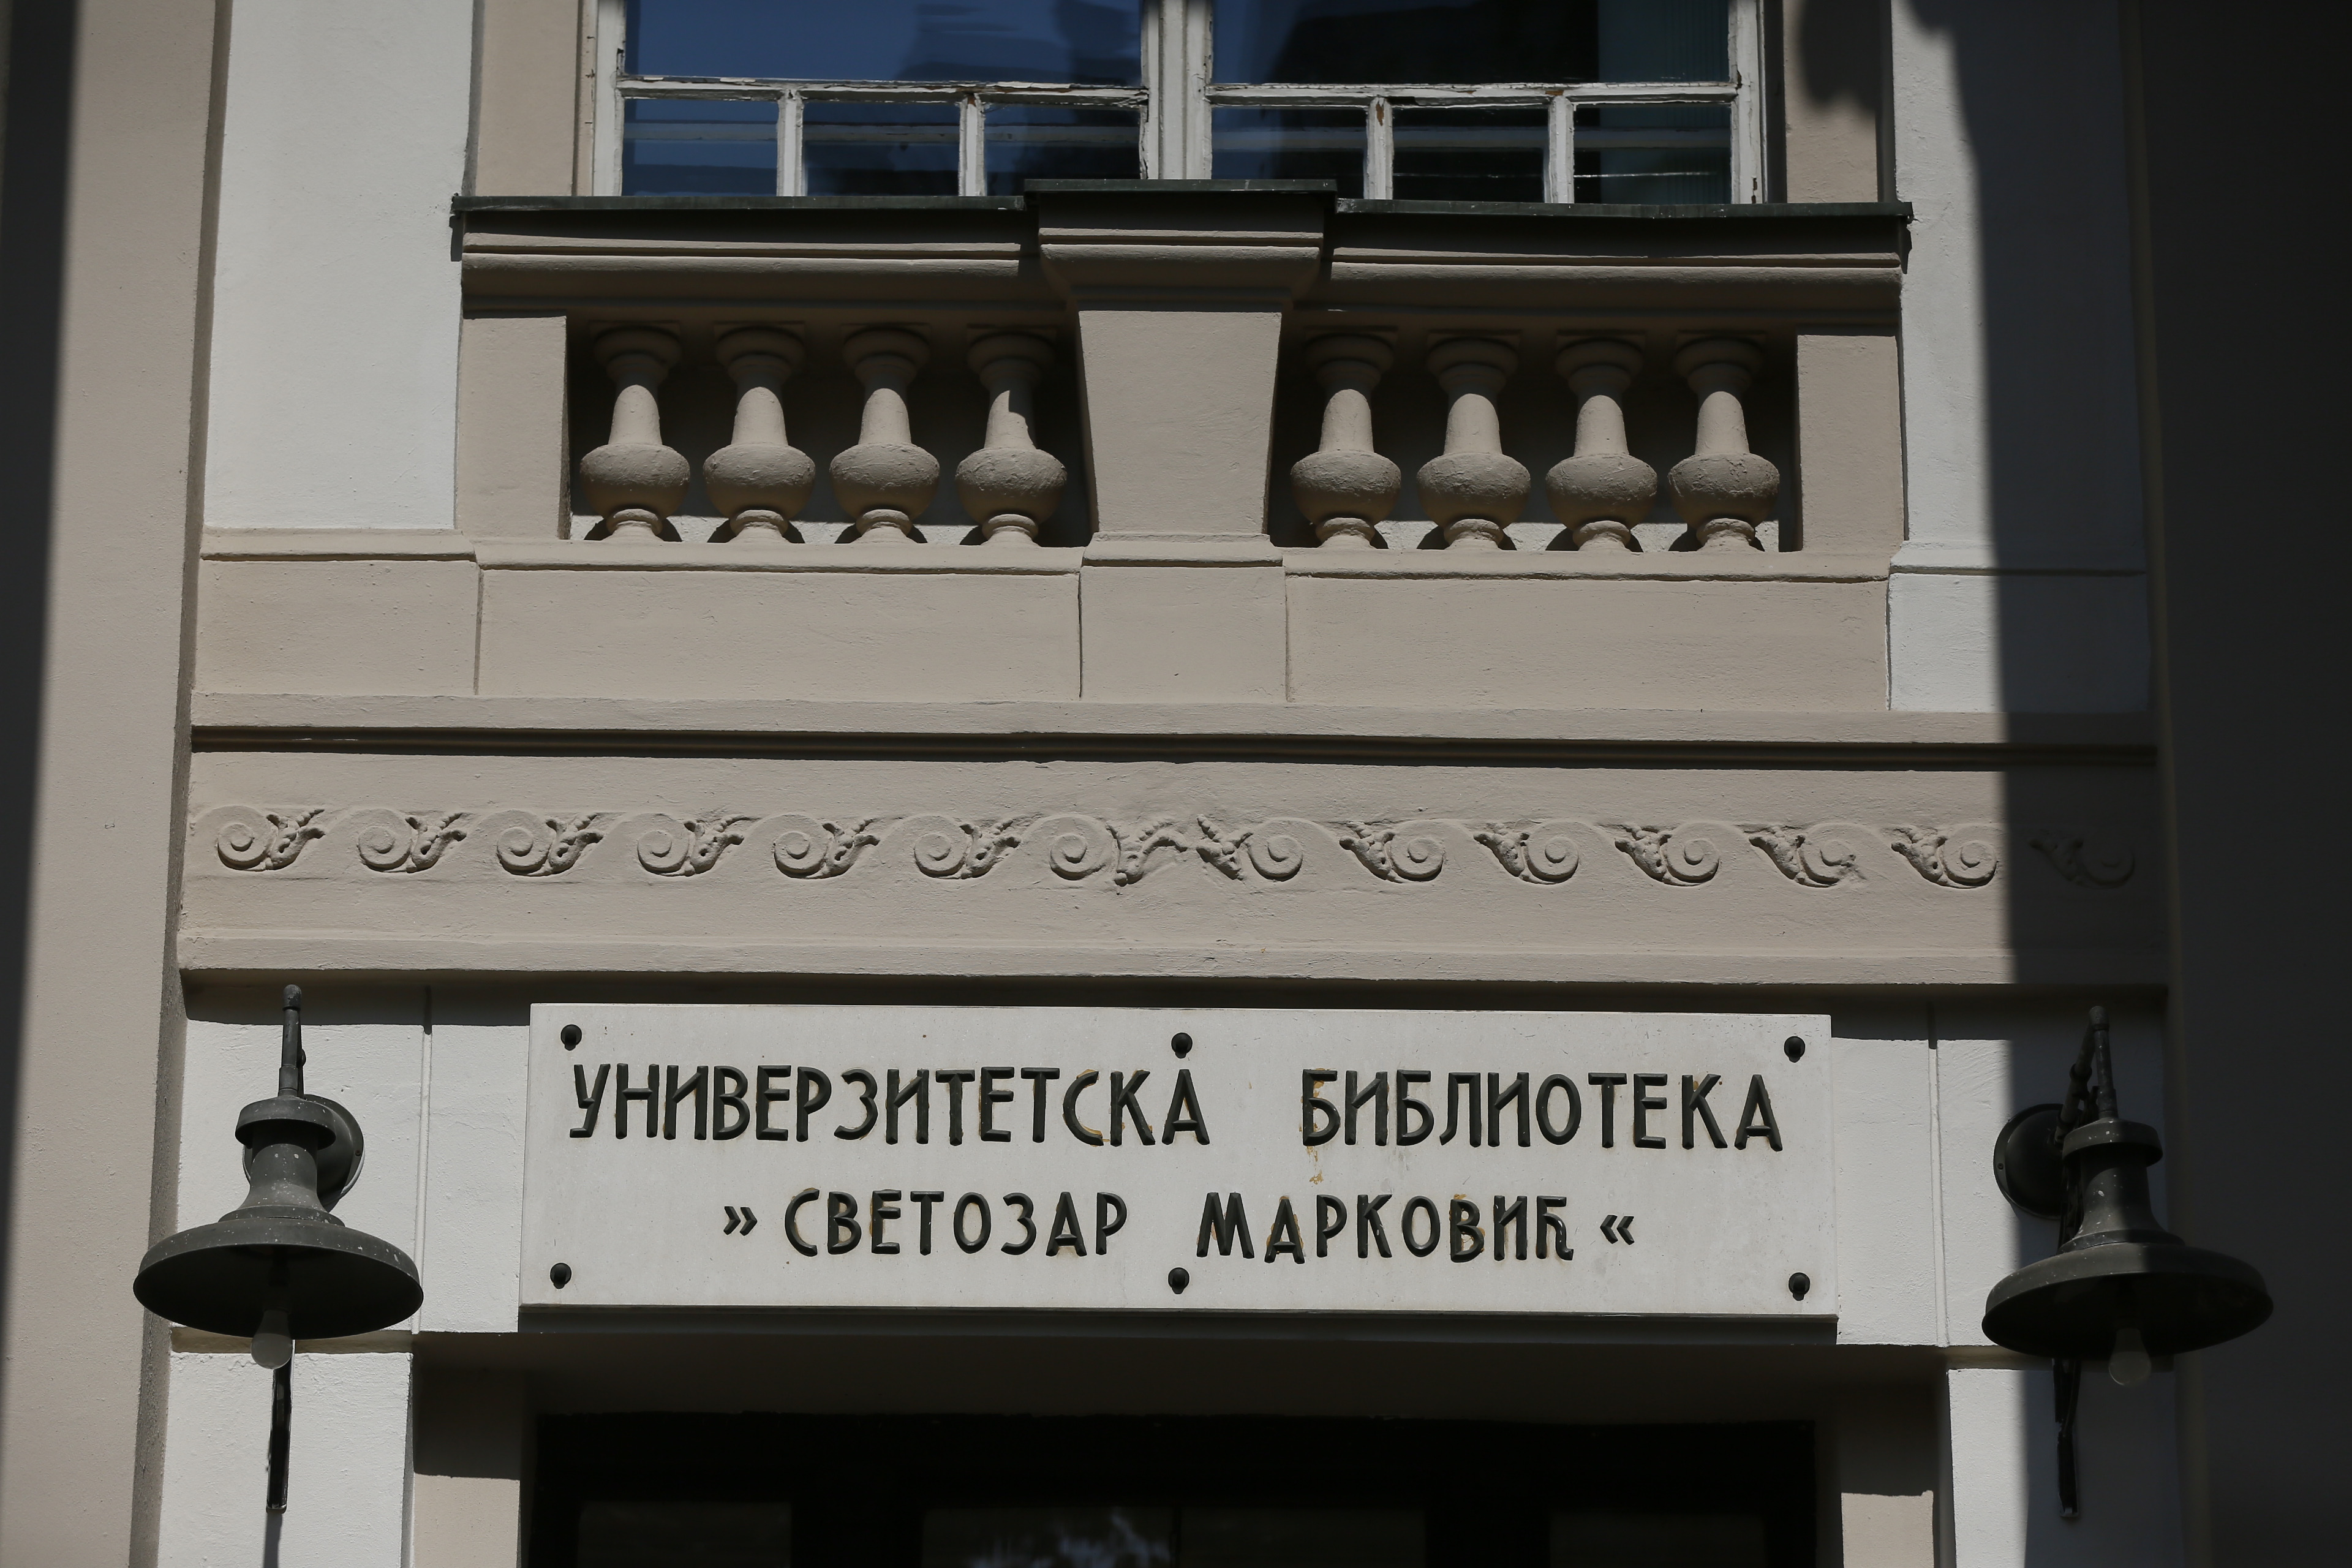 Revitalizacija fasade – Univerzitetska biblioteka “Svetozar Marković“ 4